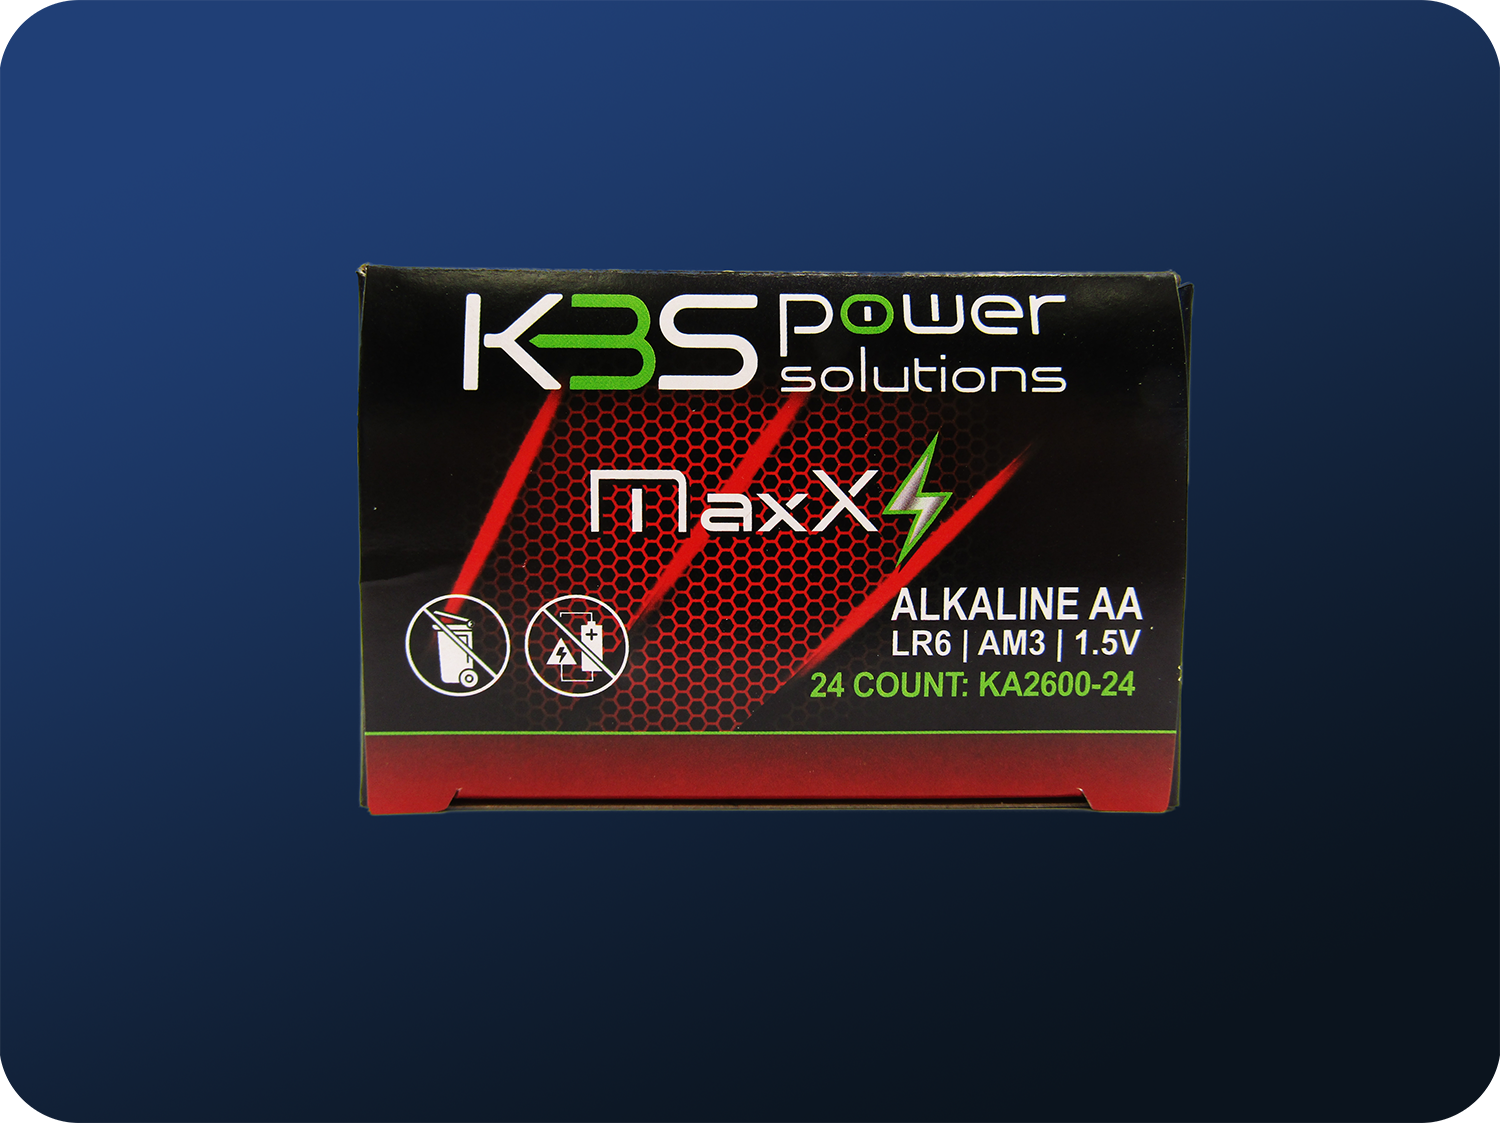 KBS Power Solutions Maxx Peak Alkaline AA Batteries 24 pack